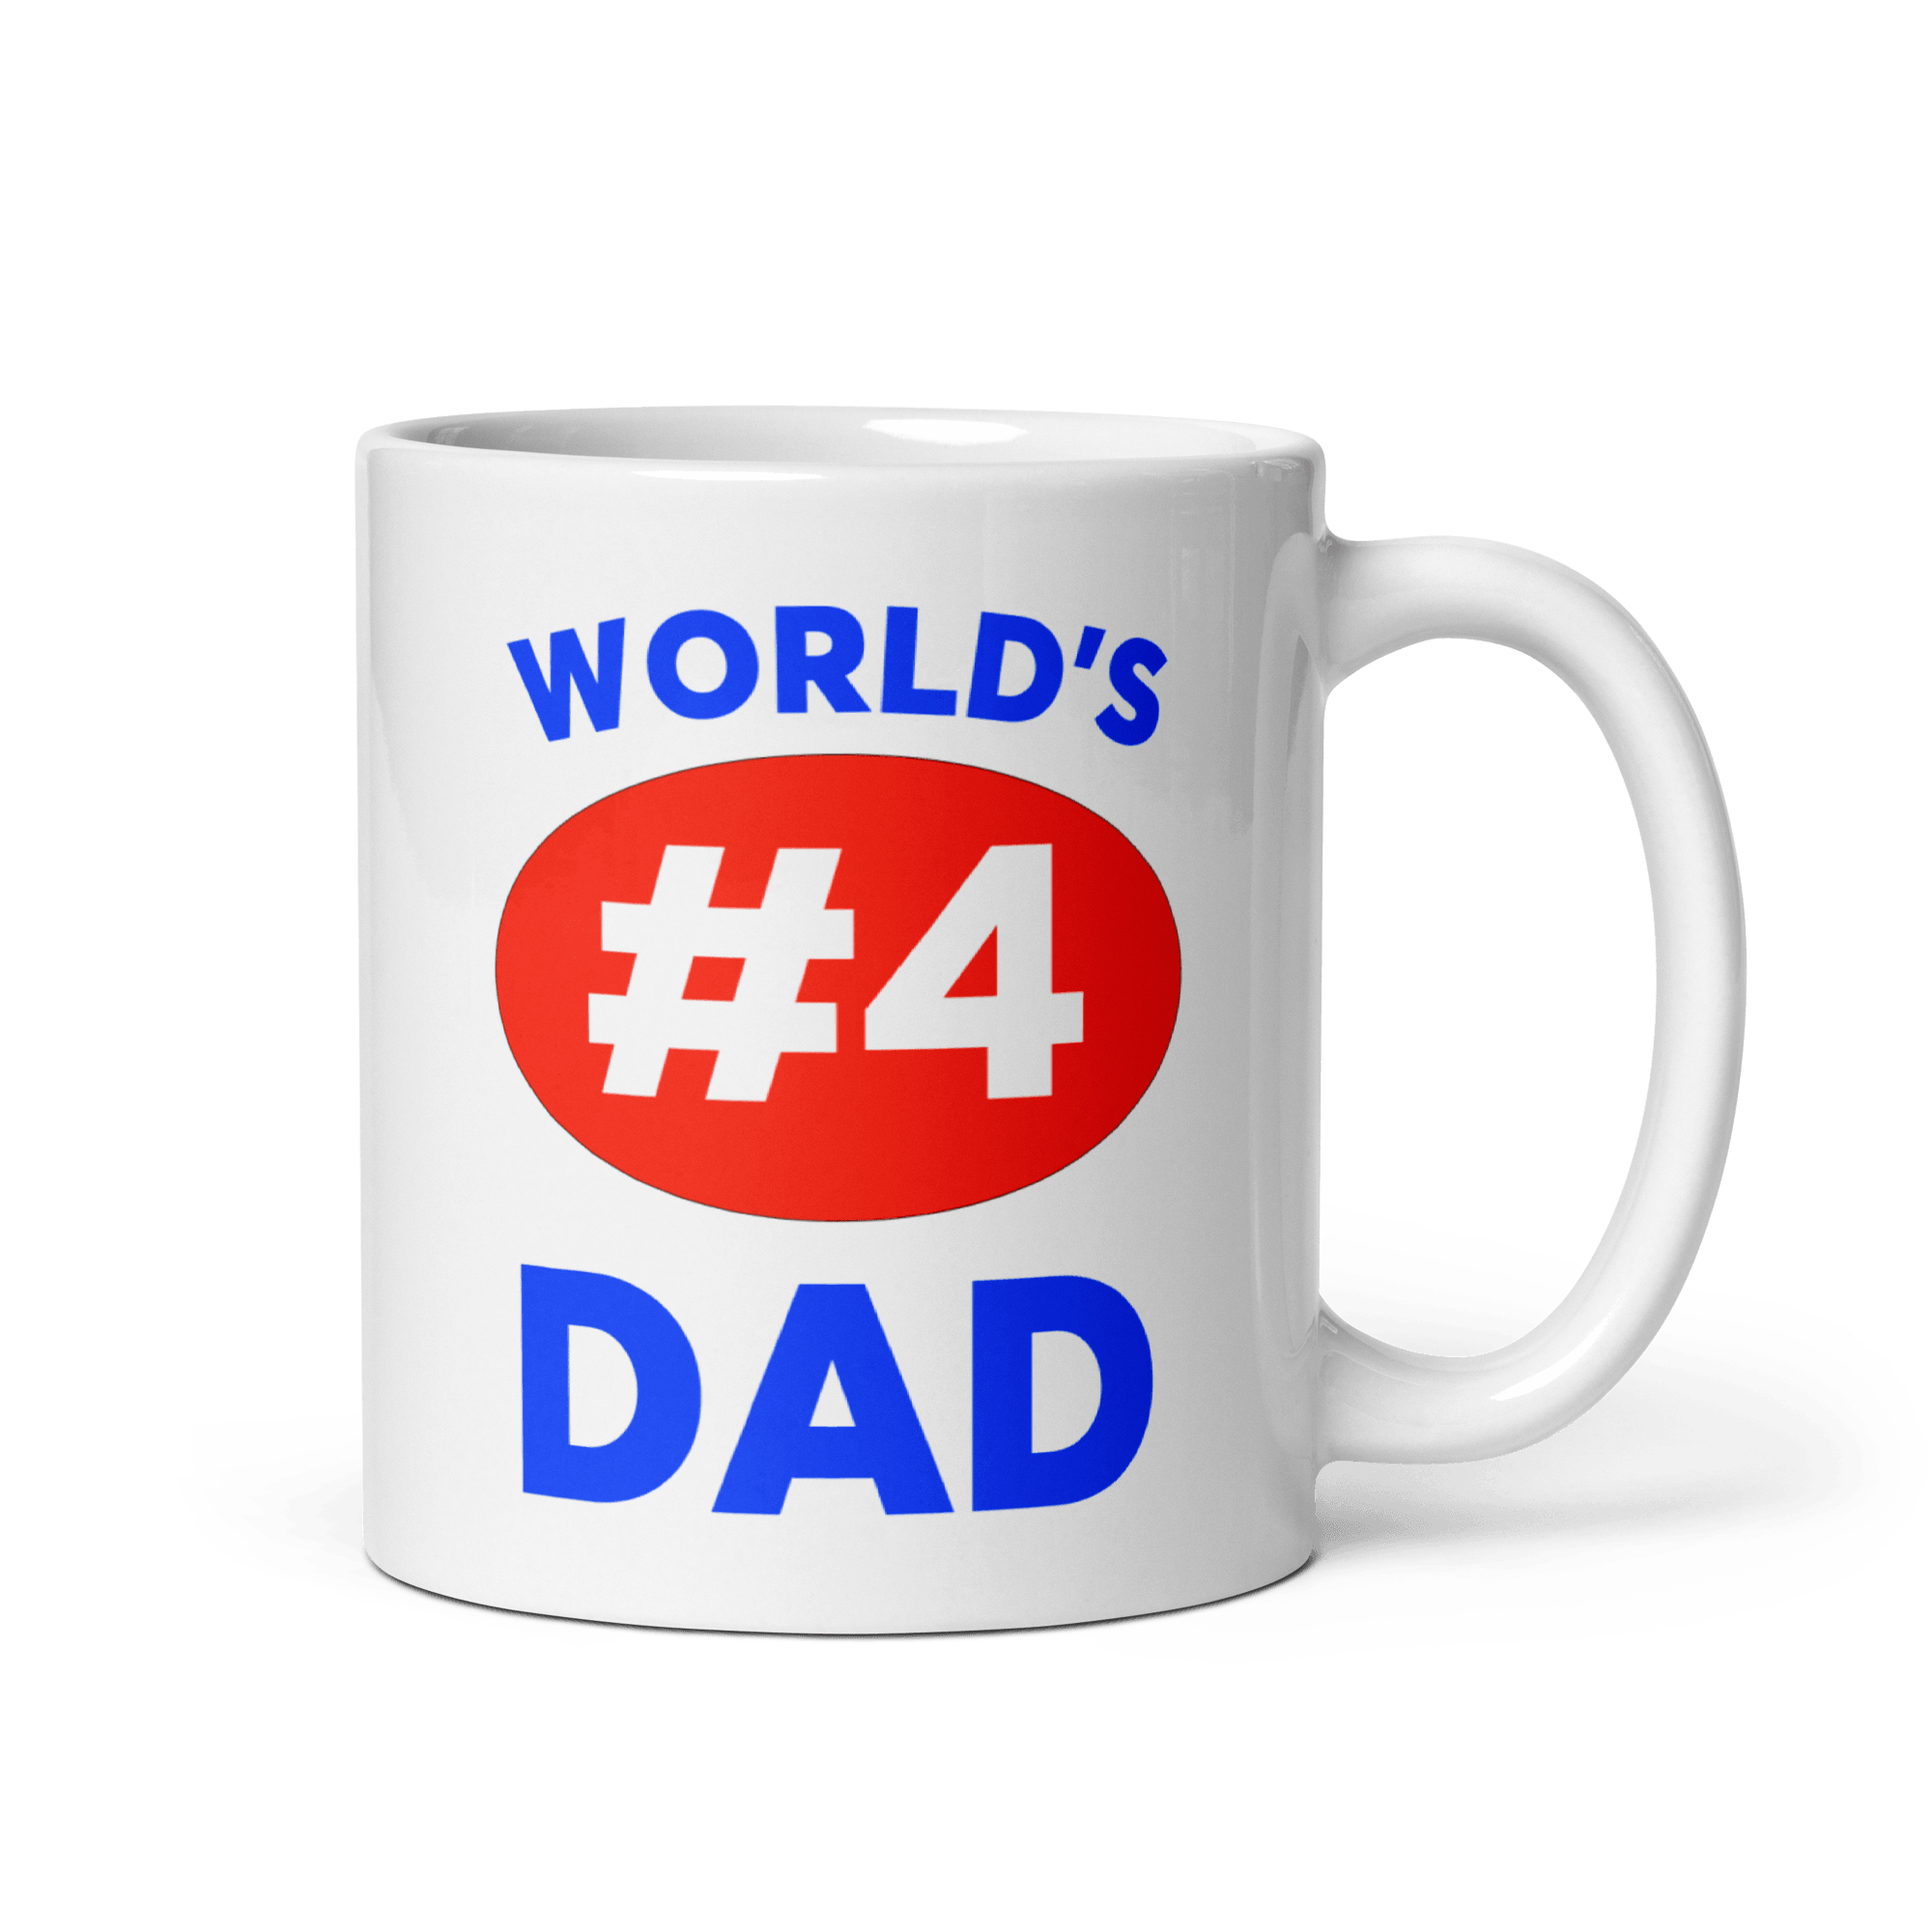 World's #4 Dad Mug - Polychrome Goods 🍊